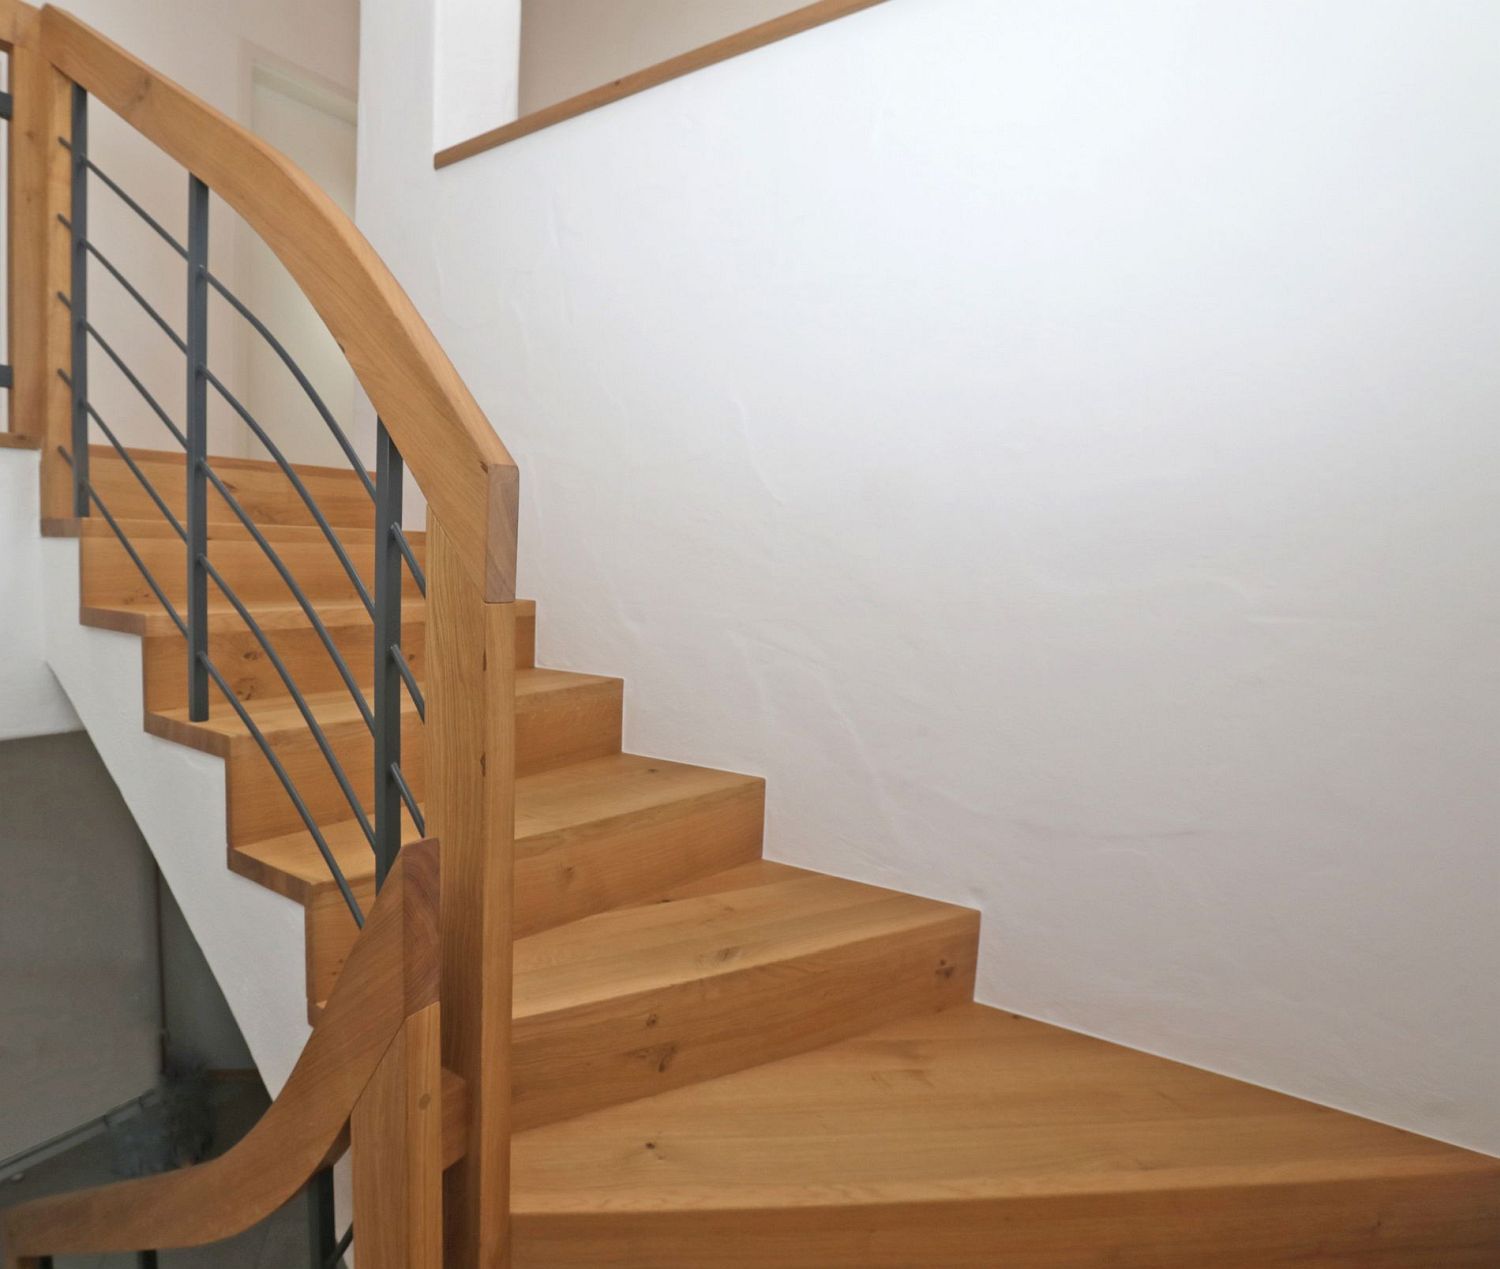 Faltwerkstufen in Asteiche mit Treppengeländer in Stahl-Holzkombination